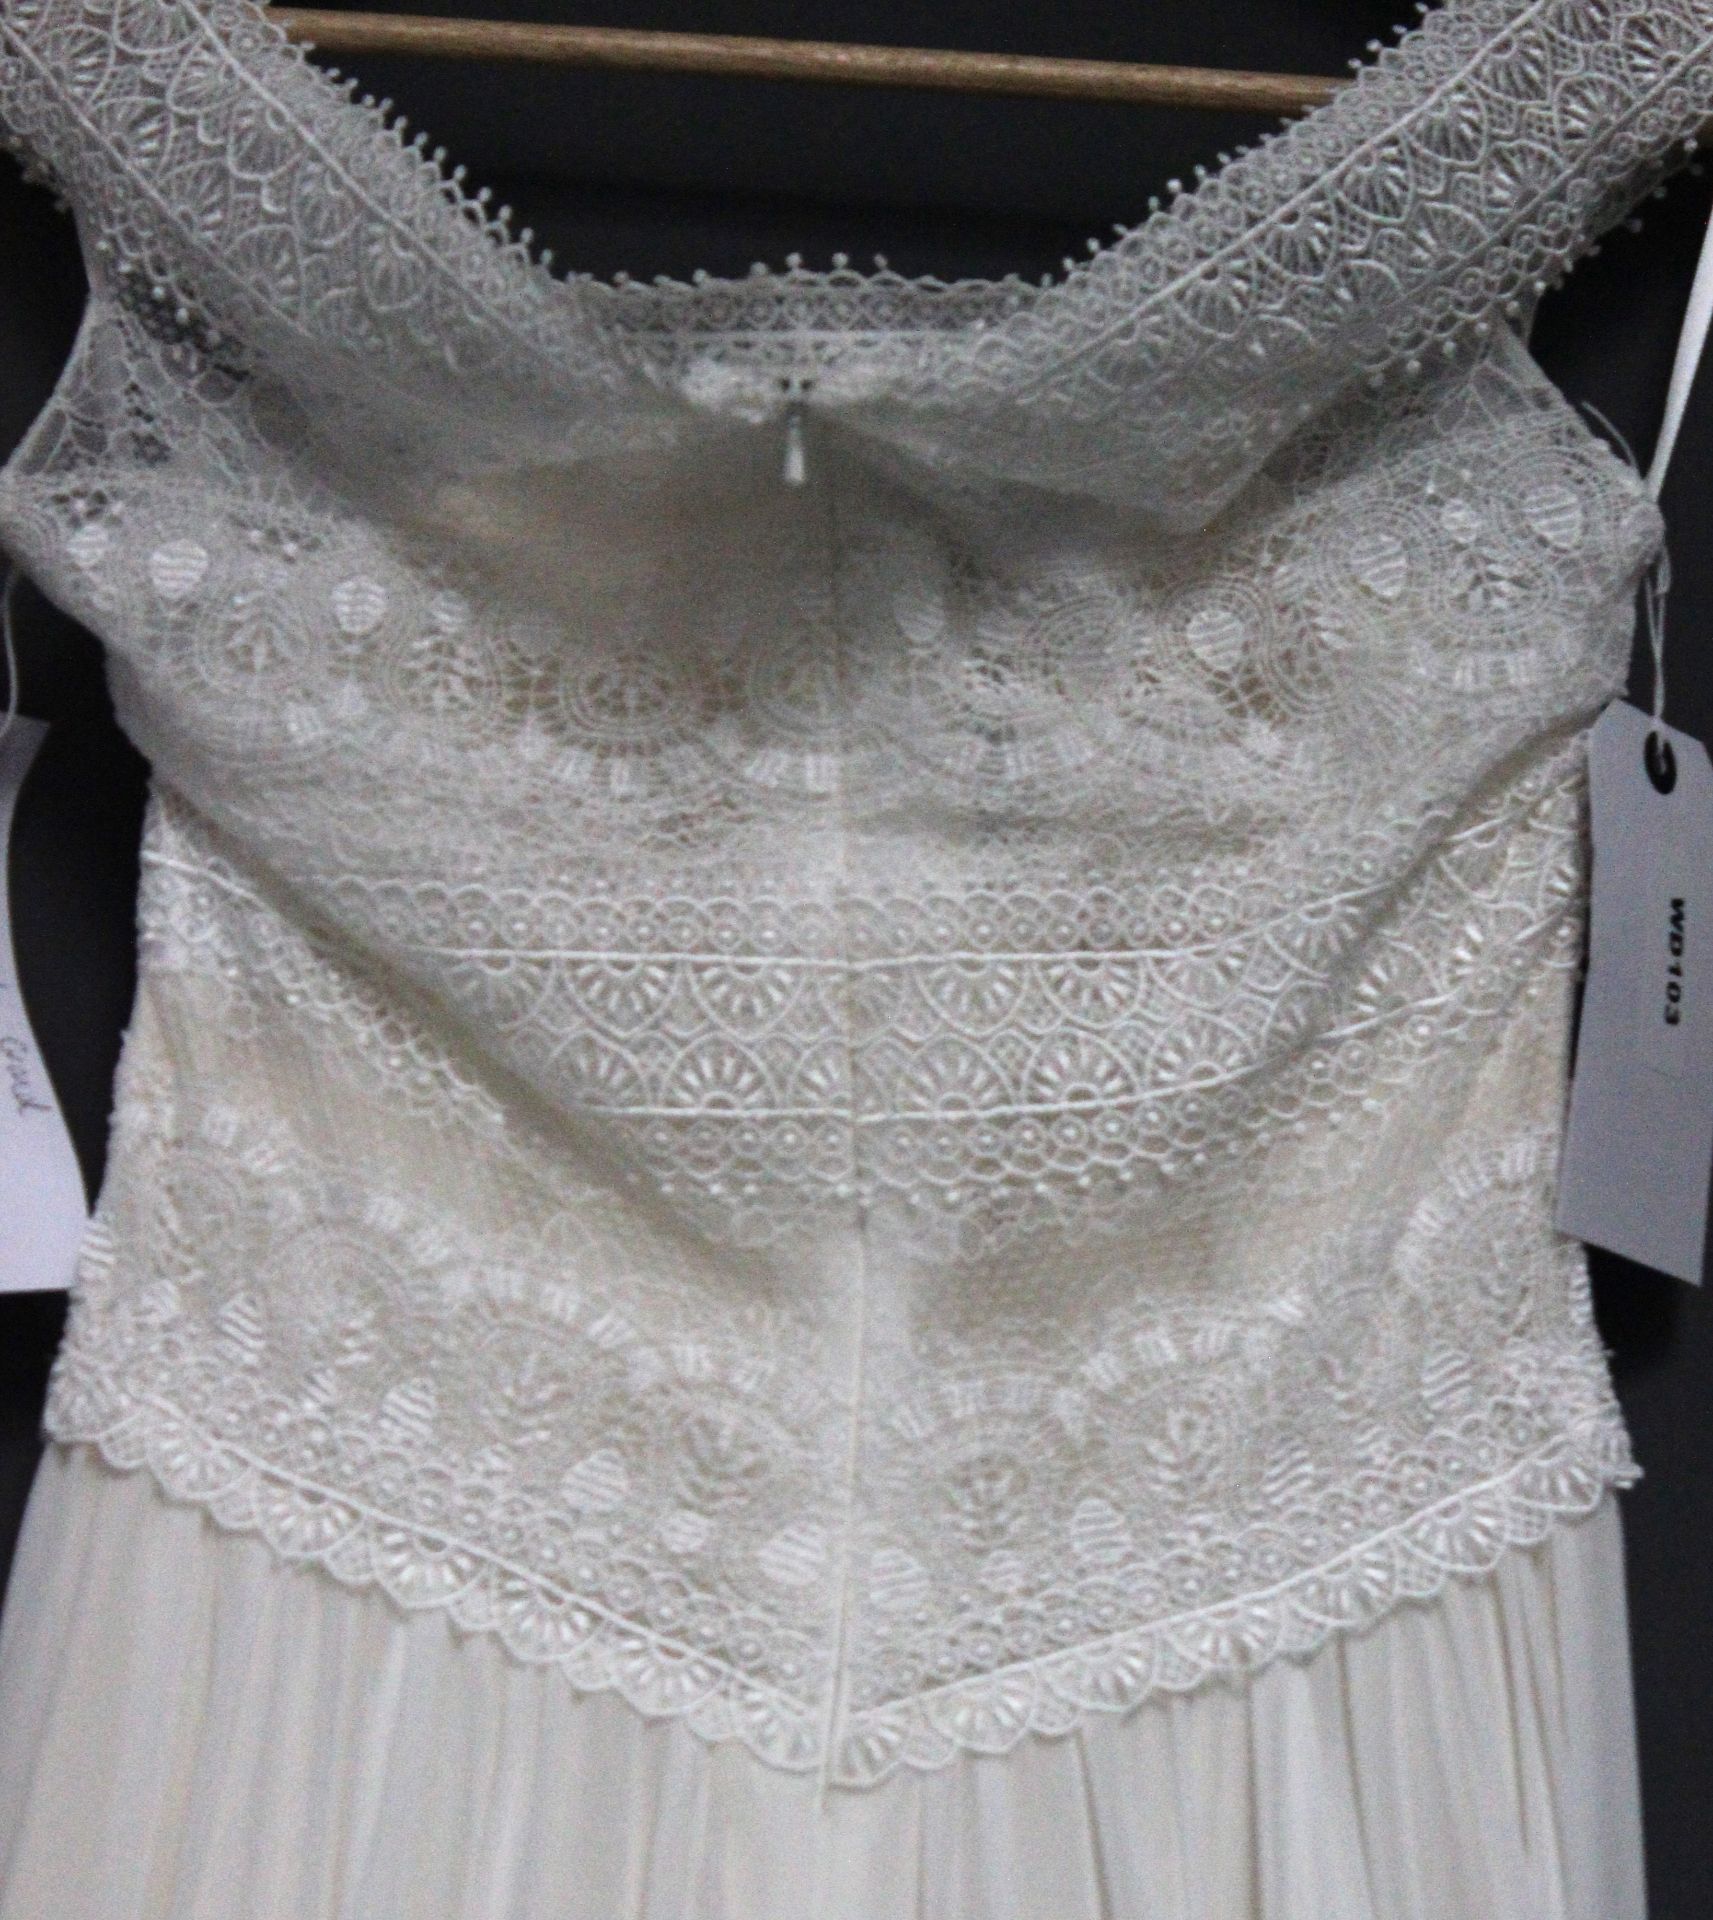 1 x DIANE LE GRAND Lace Off The Shoulder Designer Wedding Dress RRP £1,400 UK10 - Image 3 of 6